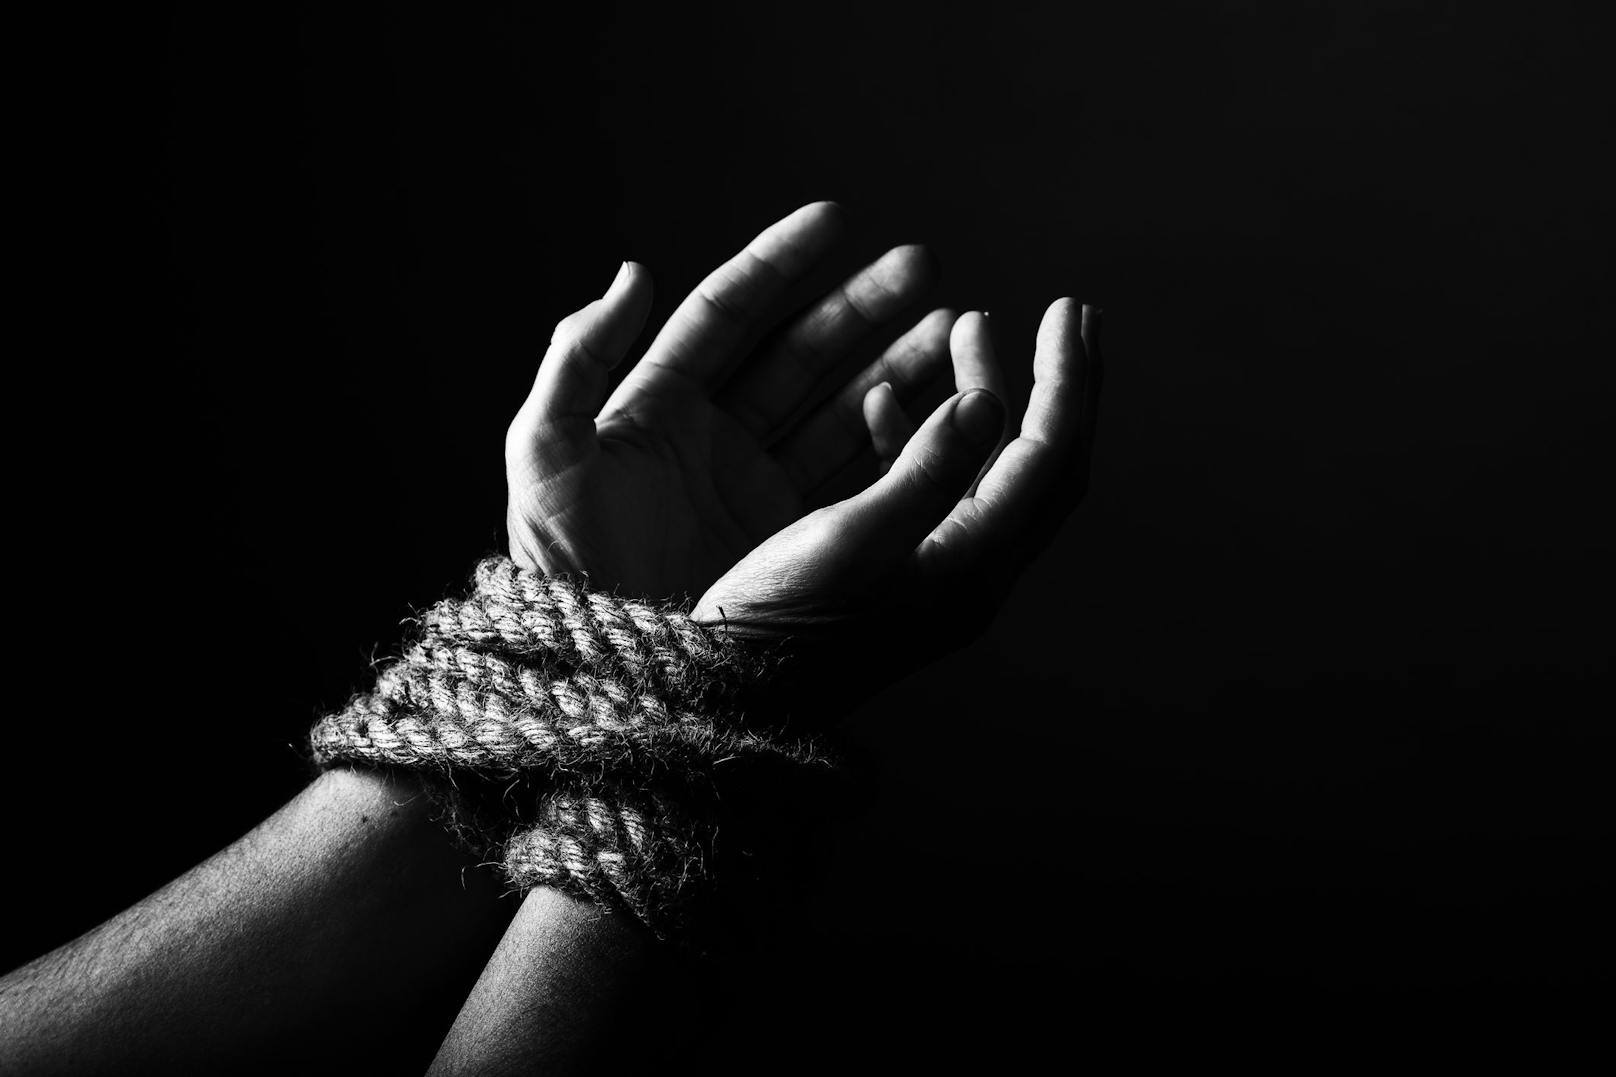 Margarita G. wurde von ihrem Mann entführt, dann hackte er ihr beide Hände ab. (Symbolbild)